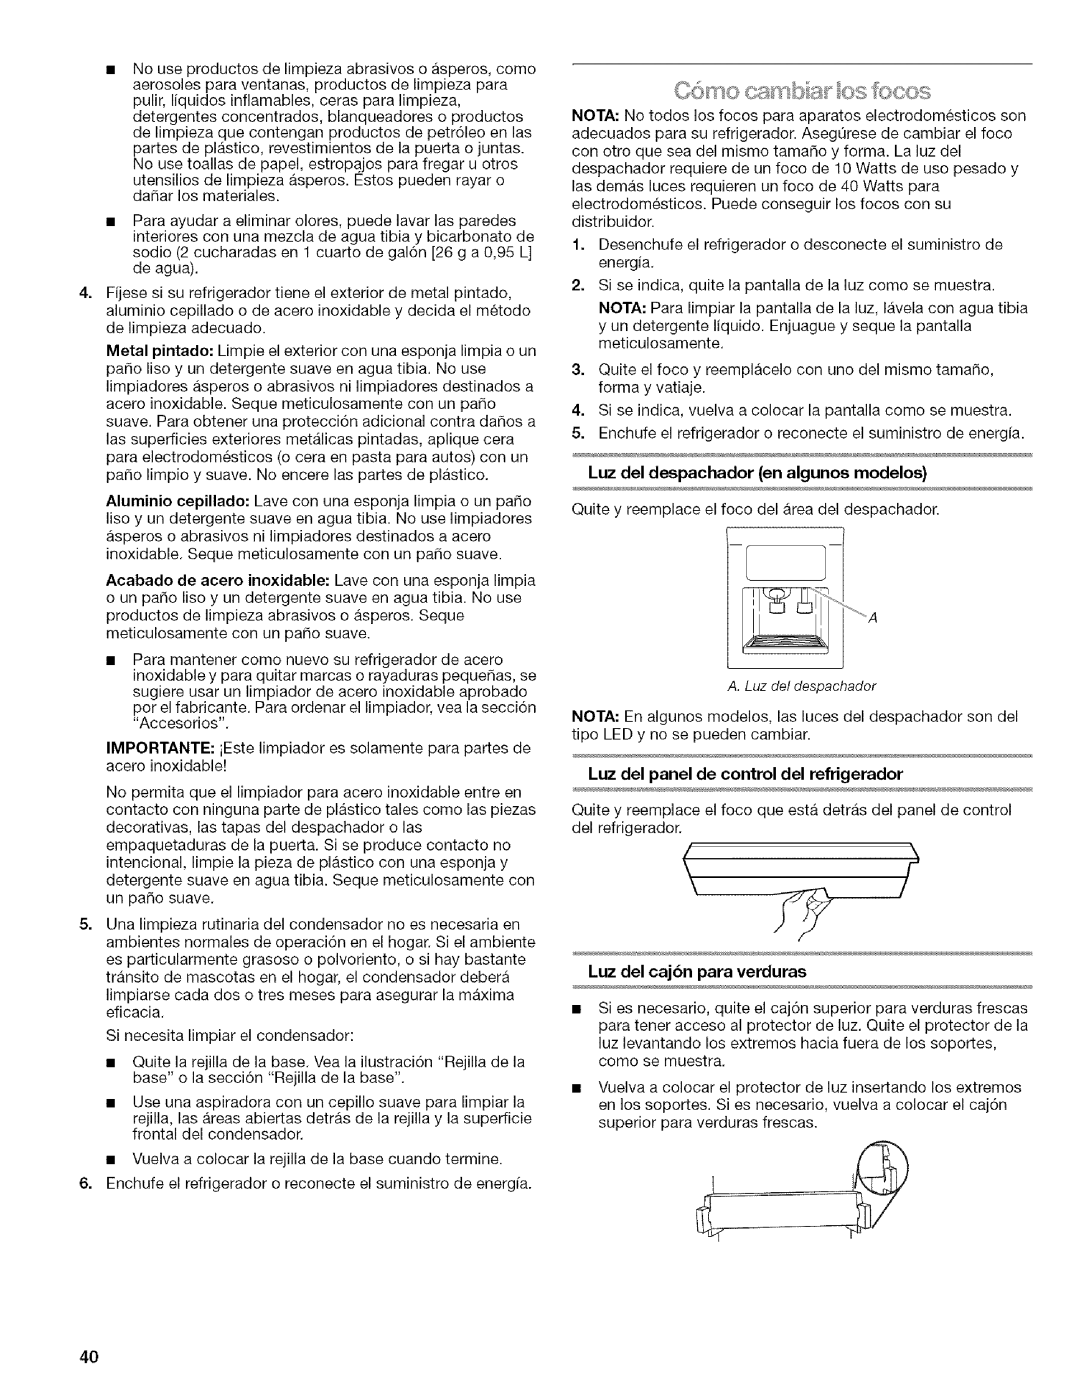 Kenmore WIOI67097A manual Luz del despachador en algunos modelos, Luz del cajbn para verduras 